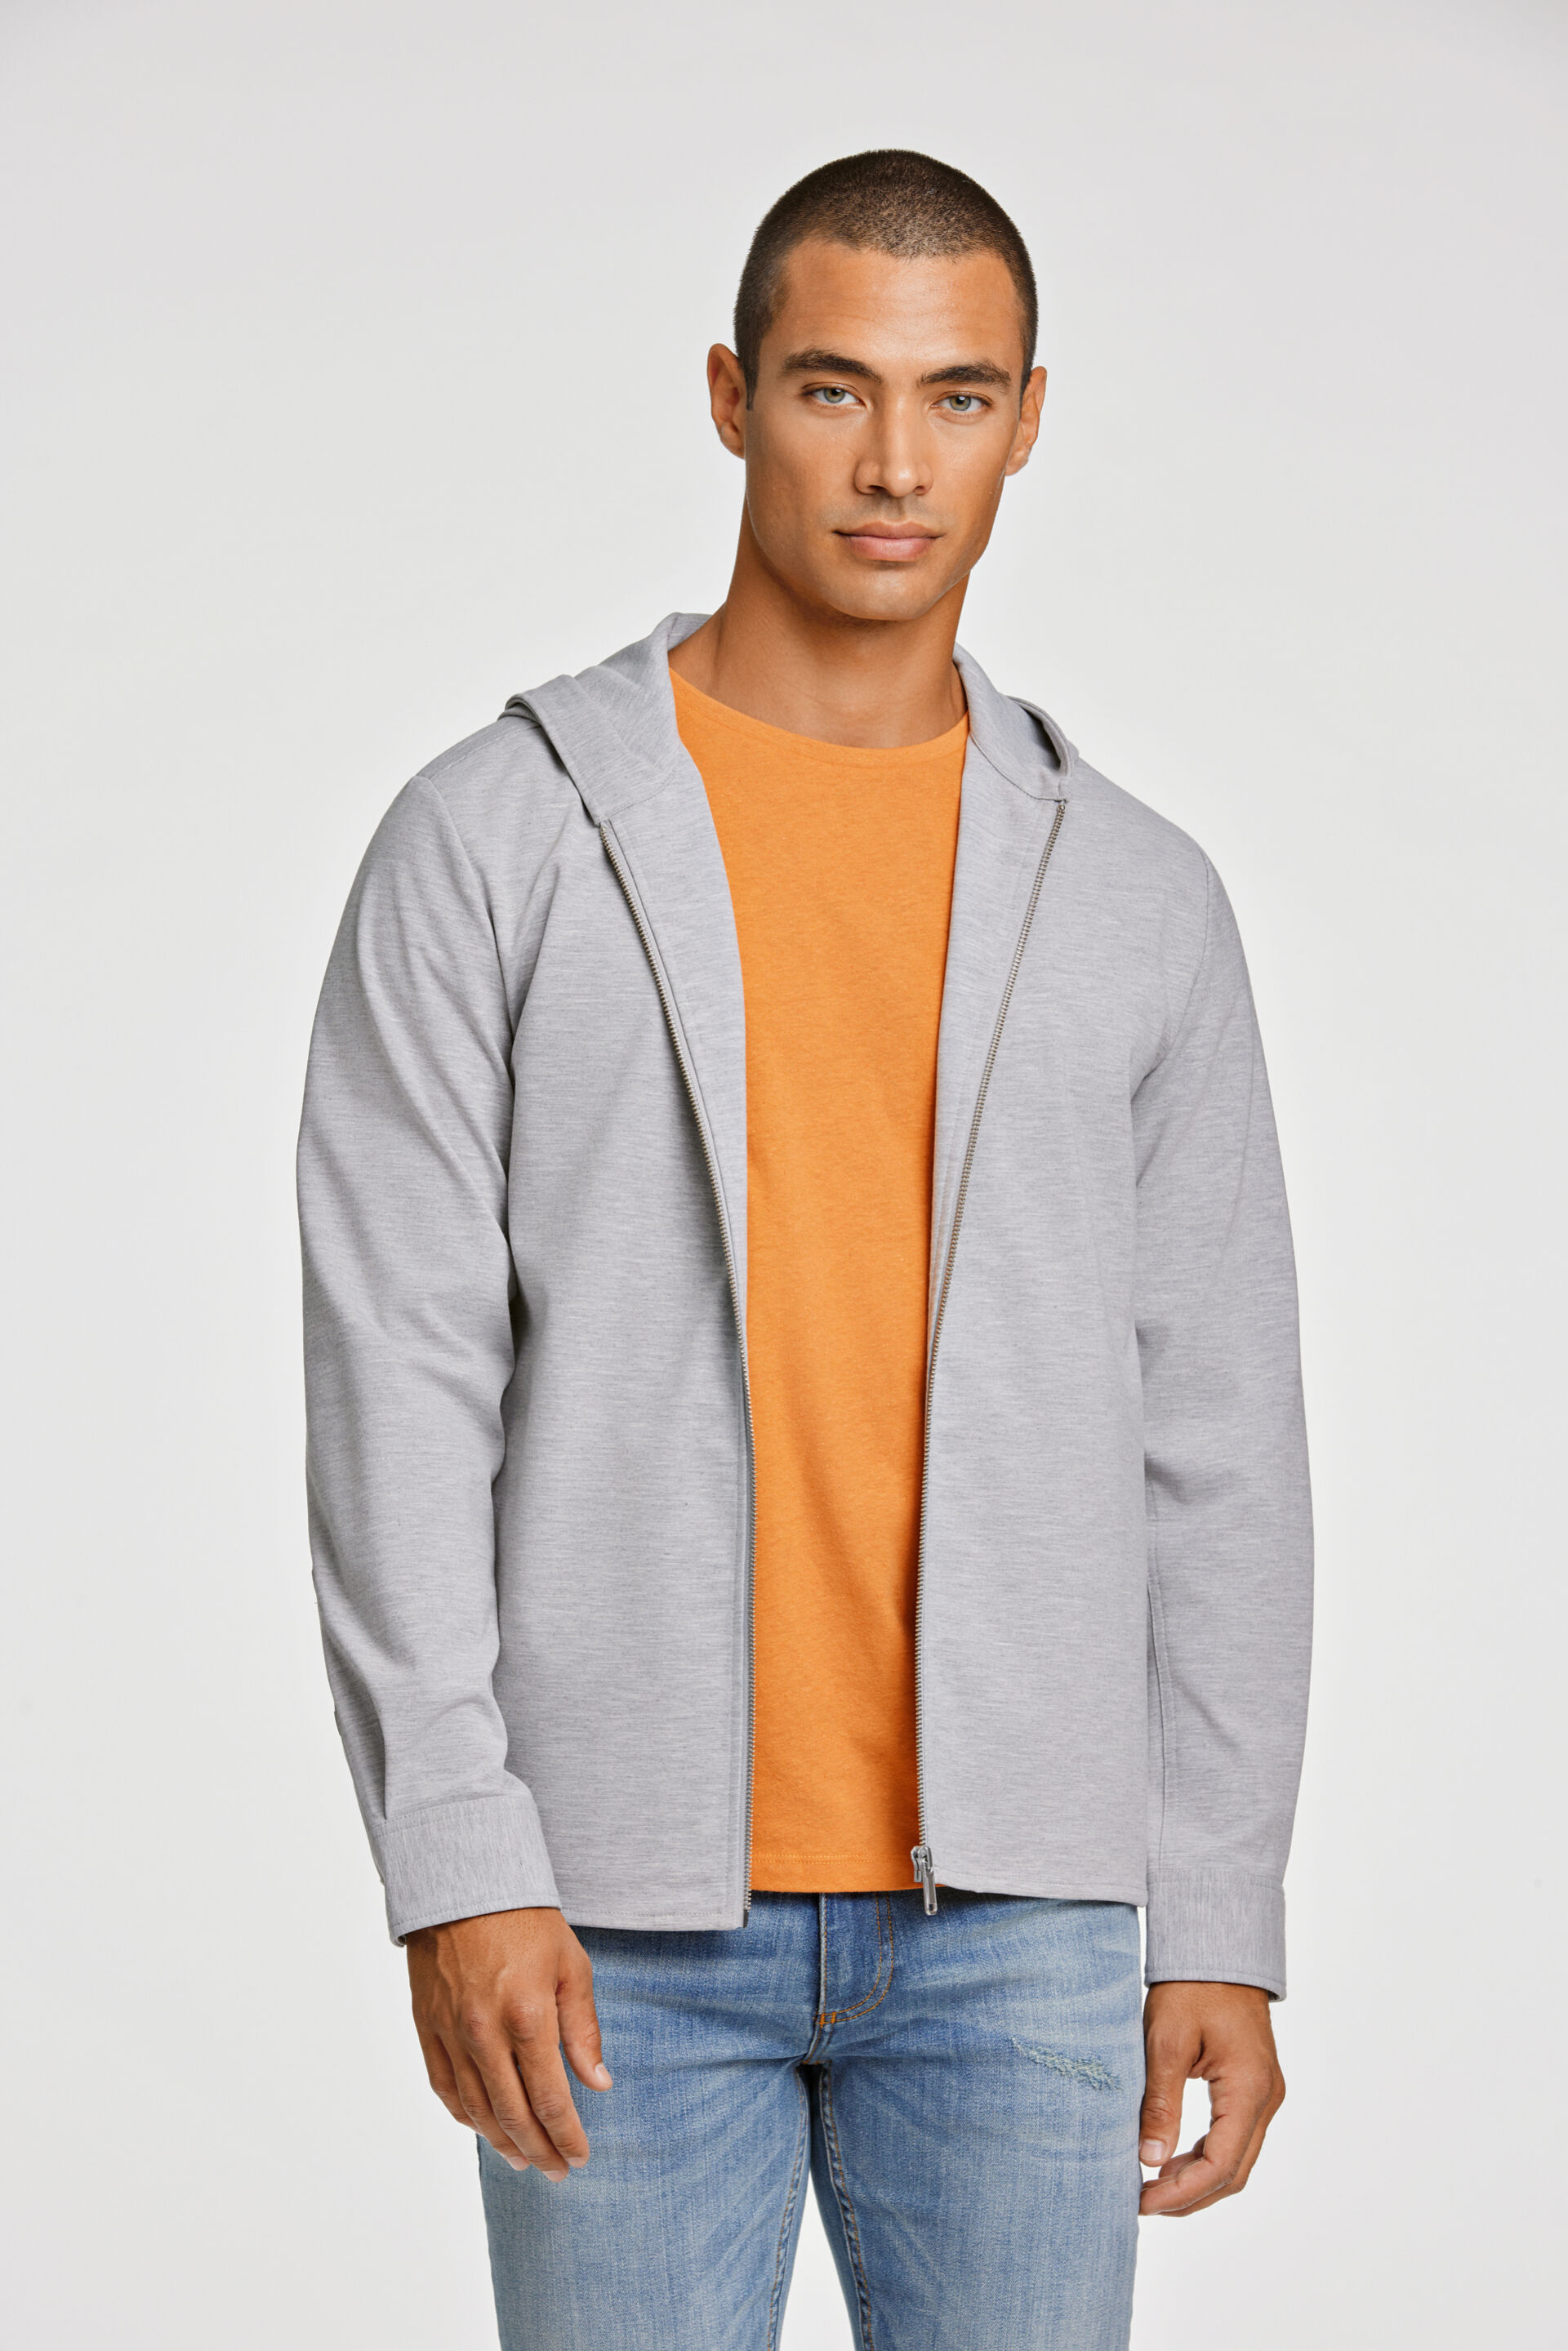 Casuel jackets Casuel jackets Grey 30-304024